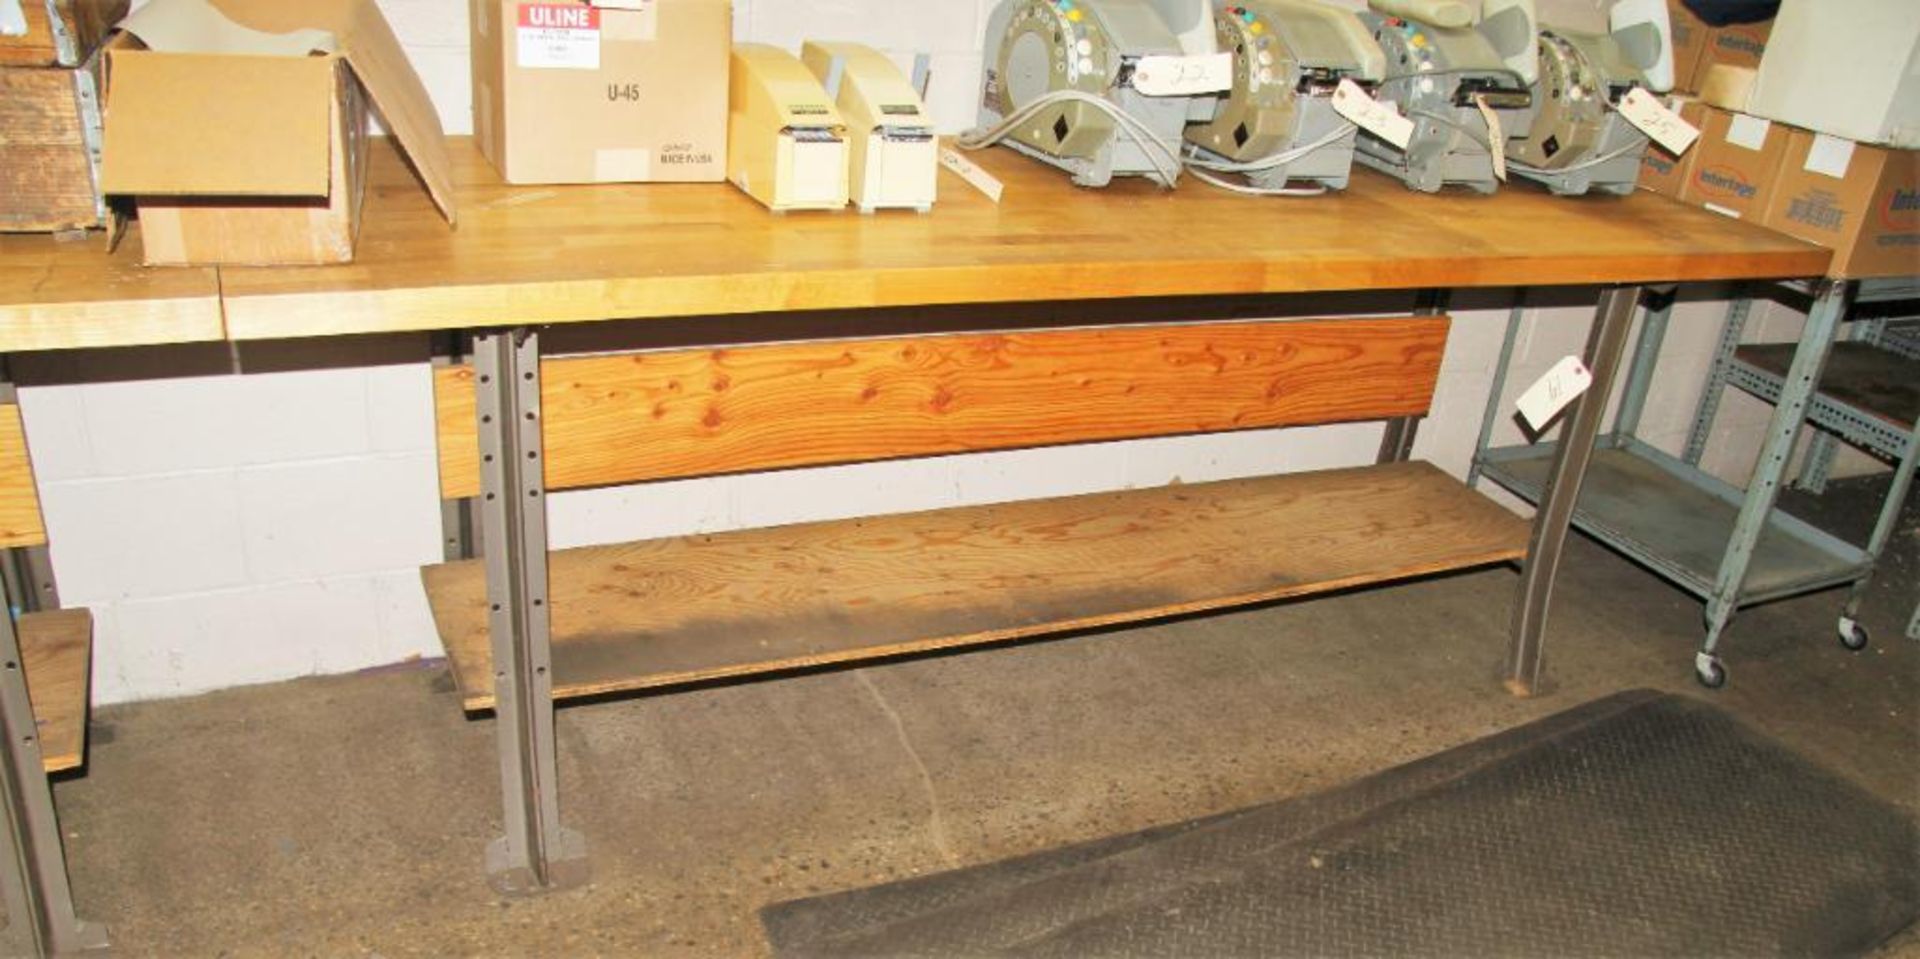 30" X 96" Woodtop Work Bench, Metal Legs (No Contents)